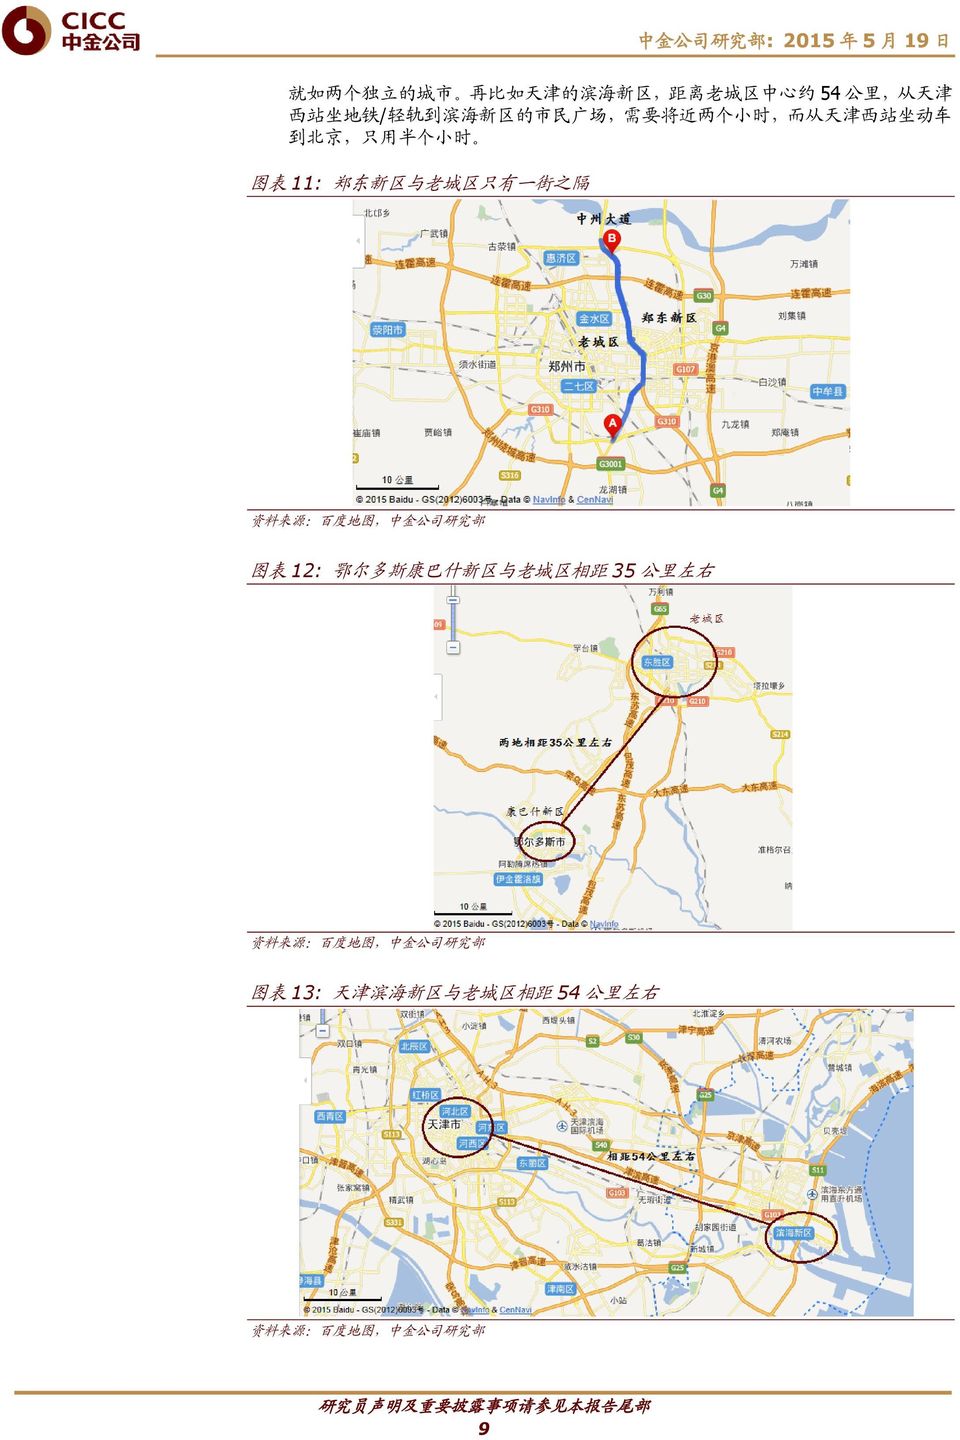 老 城 区 只 有 一 街 之 隔 资 料 来 源 : 百 度 地 图, 中 金 公 司 研 究 部 图 表 12: 鄂 尔 多 斯 康 巴 什 新 区 与 老 城 区 相 距 35 公 里 左 右 资 料